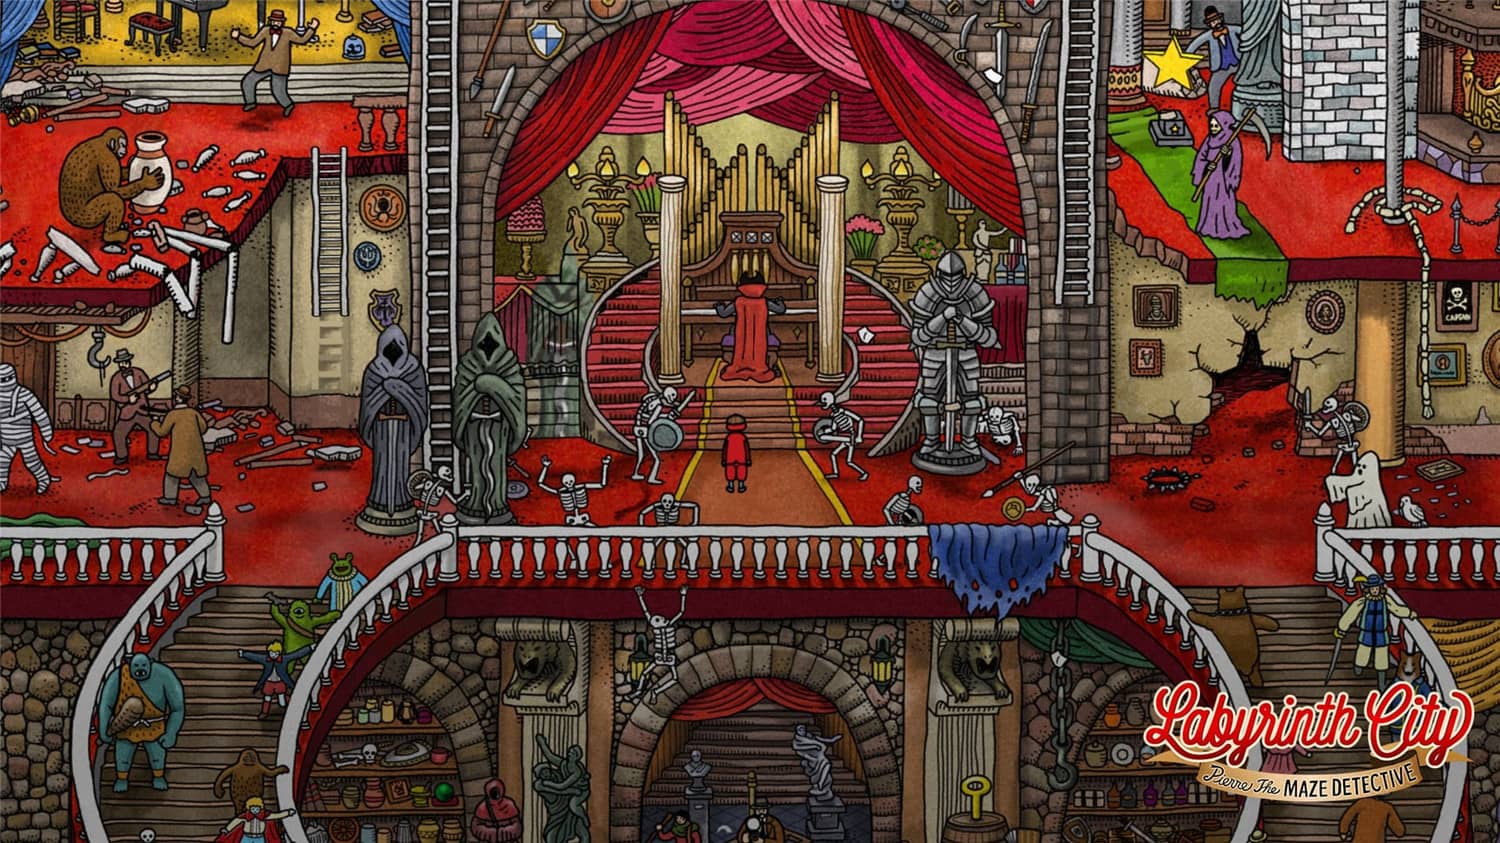 迷宫大侦探/Labyrinth City: Pierre the Maze Detective插图9